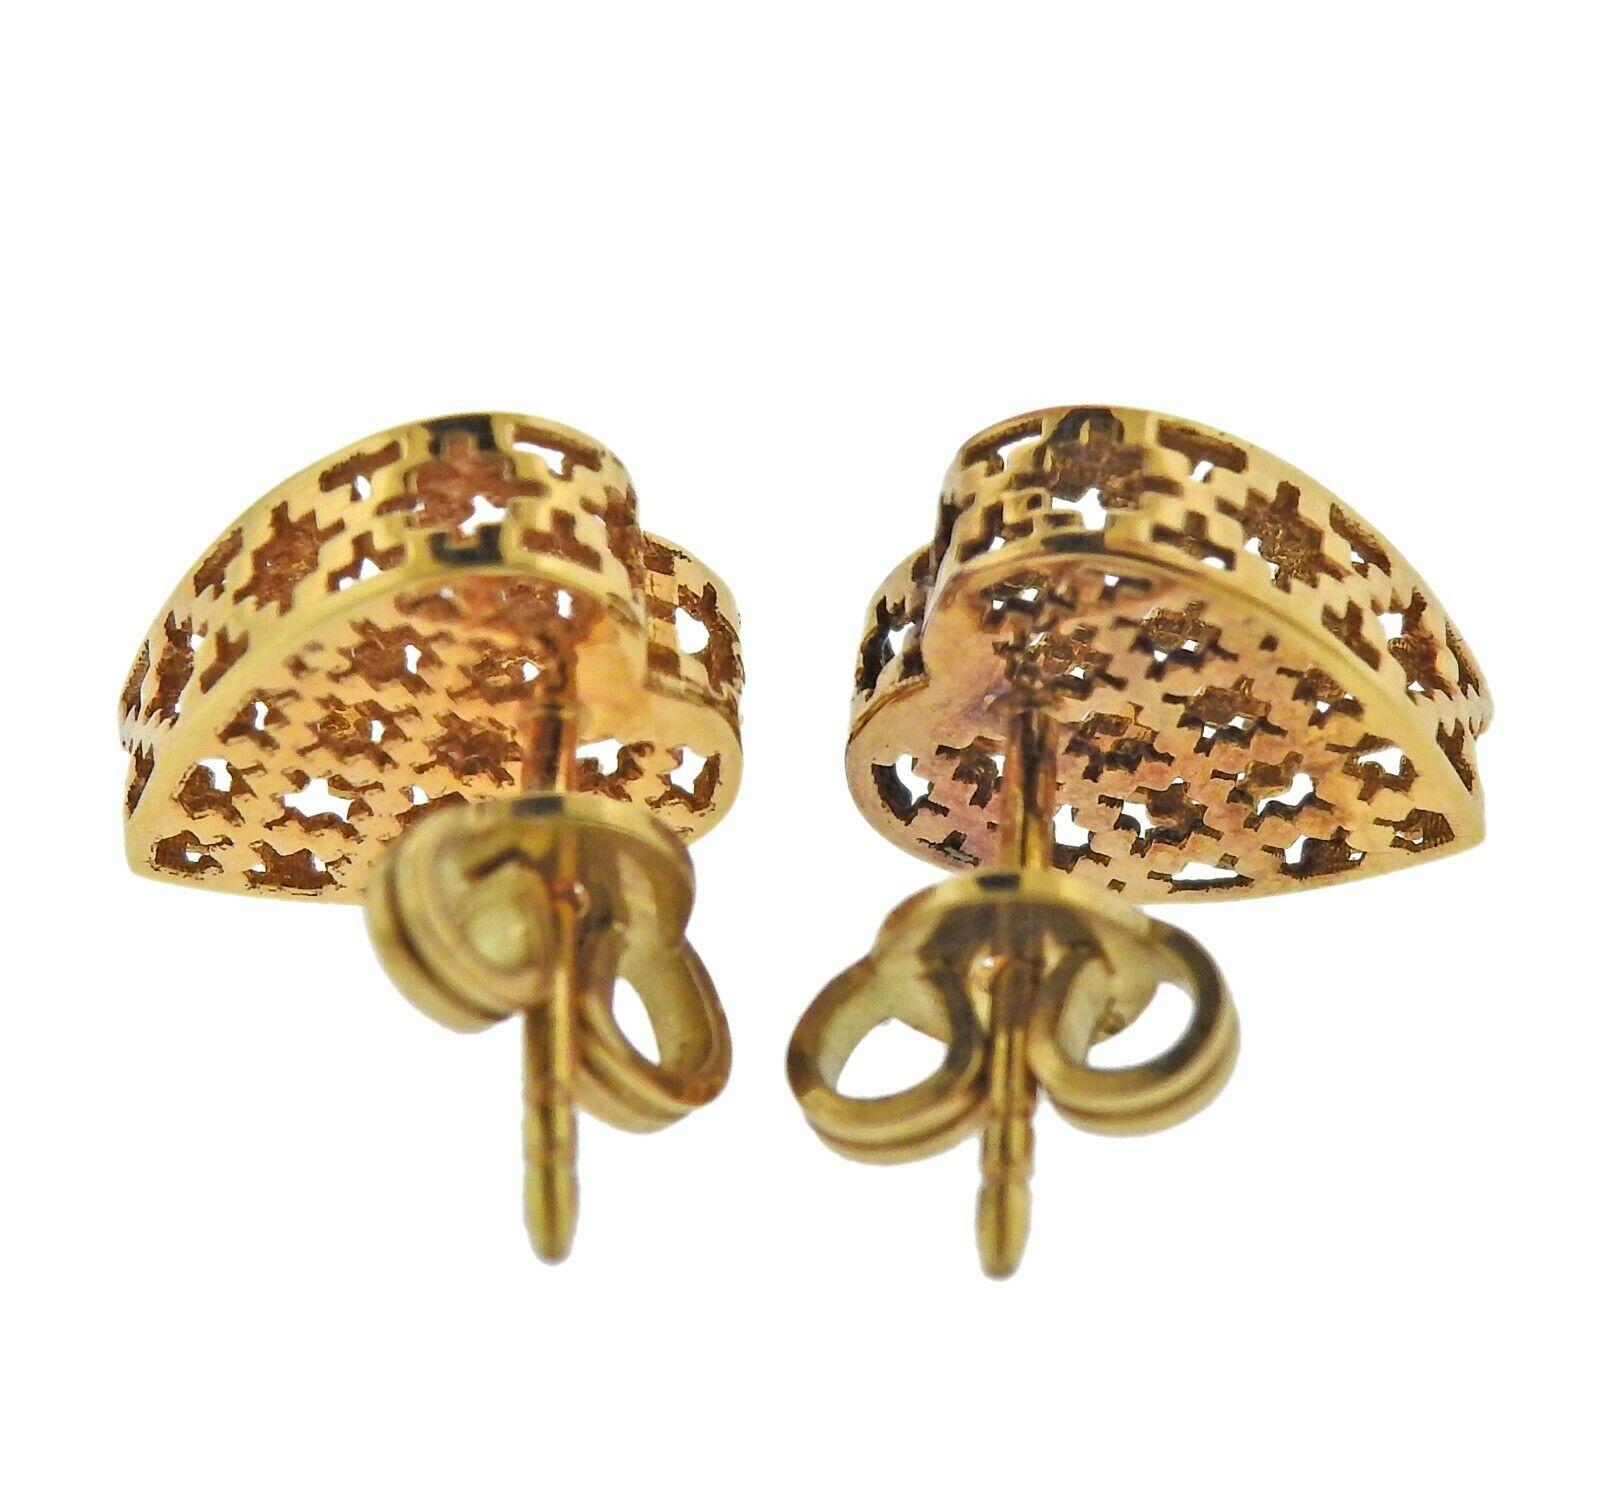 gucci gold heart earrings